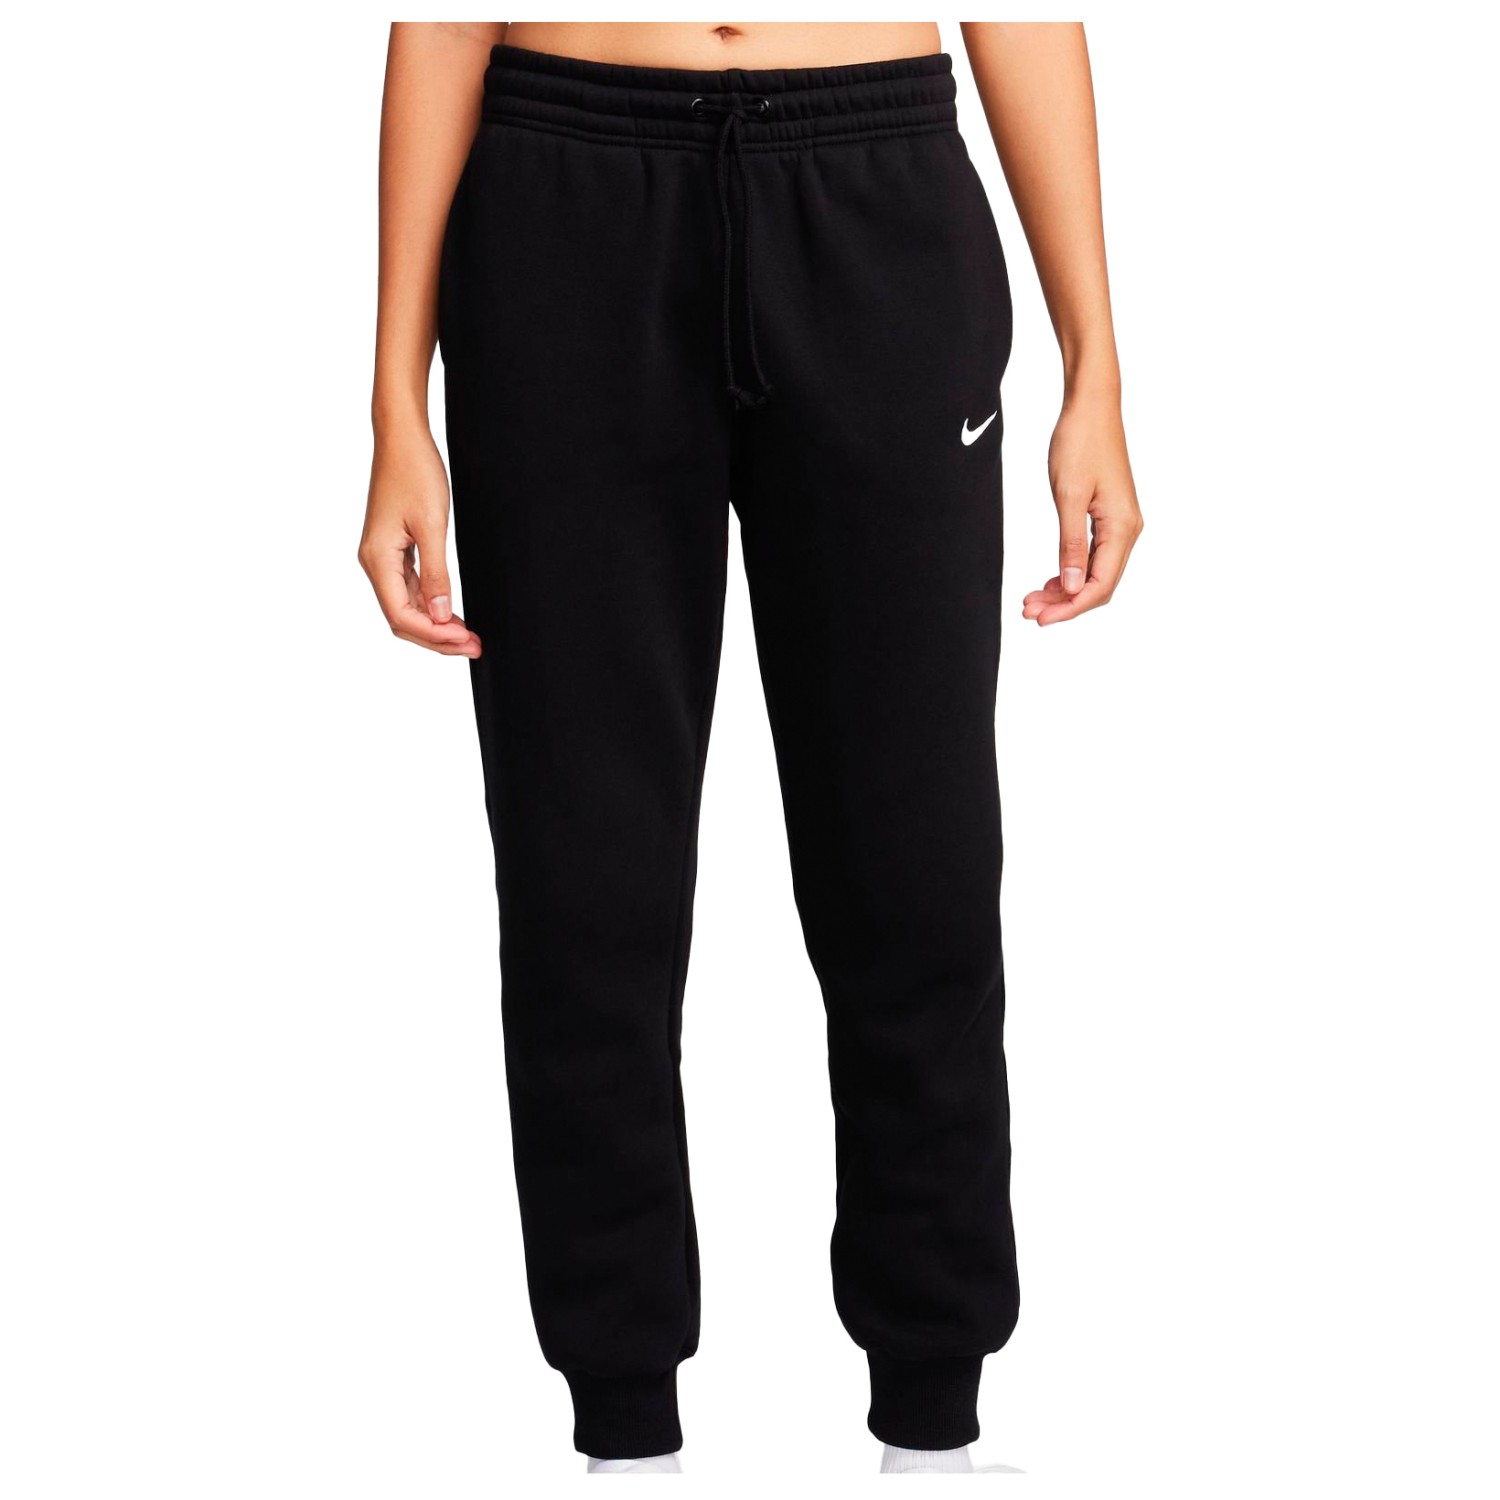 Тренировочные брюки Nike Women's Phoenix Fleece Mid Rise Pant, цвет Black/Sail спортивные брюки nike as m nsw punk pant drawstring black cu4270 010 черный